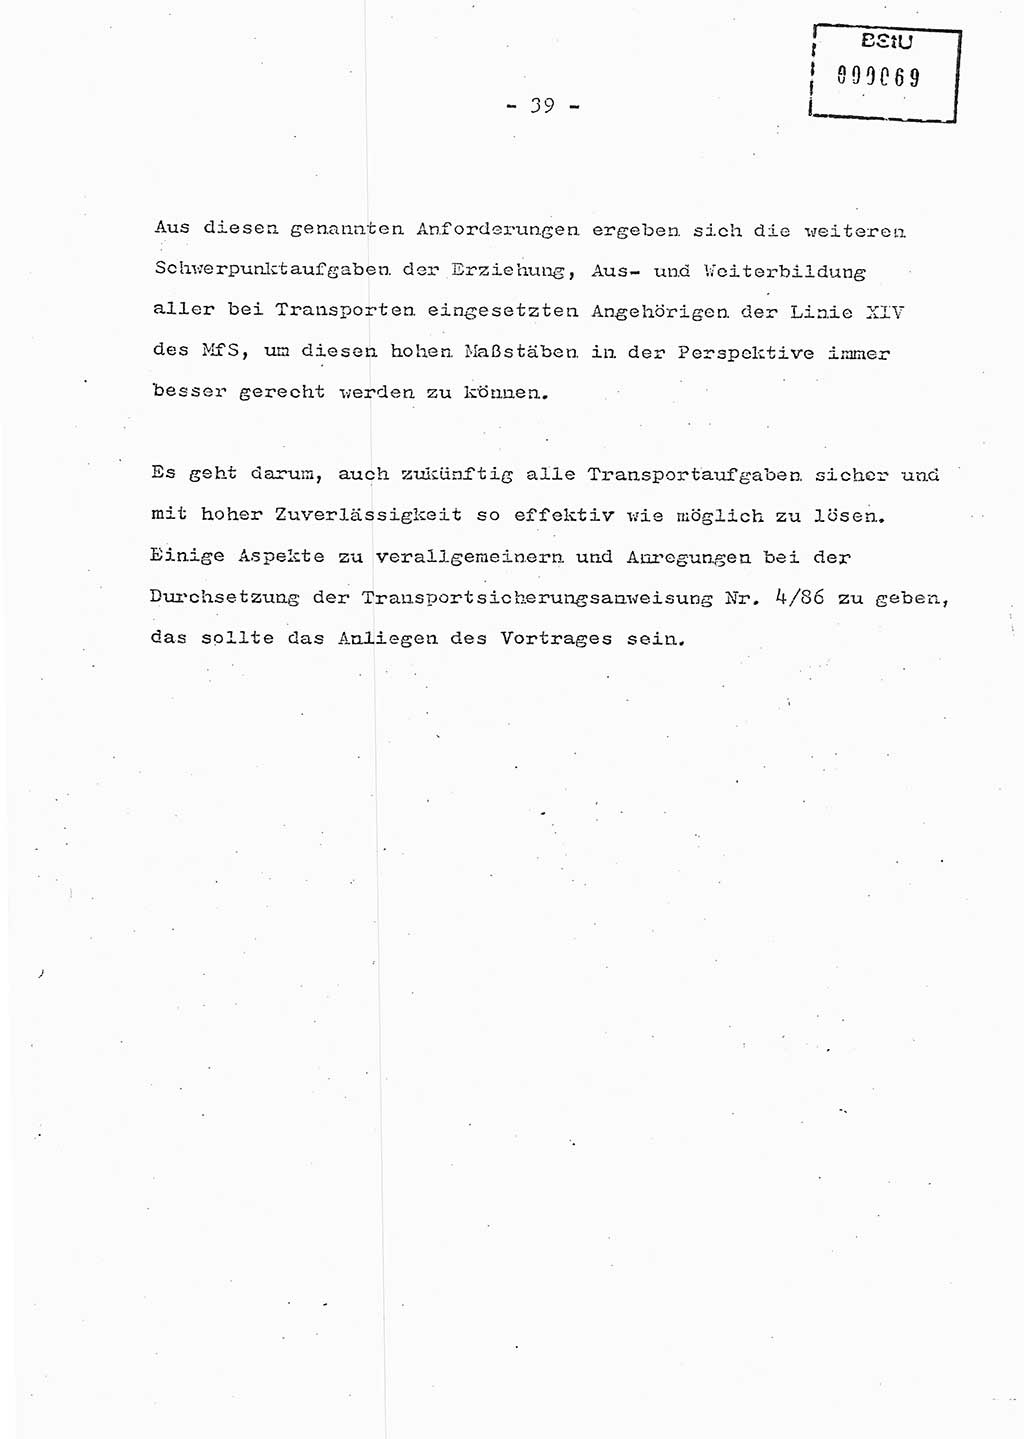 Schulungsmaterial Exemplar-Nr.: 7, Ministerium für Staatssicherheit [Deutsche Demokratische Republik (DDR)], Abteilung (Abt.) ⅩⅣ, Berlin 1986, Seite 39 (Sch.-Mat. Expl. 7 MfS DDR Abt. ⅩⅣ /86 1986, S. 39)